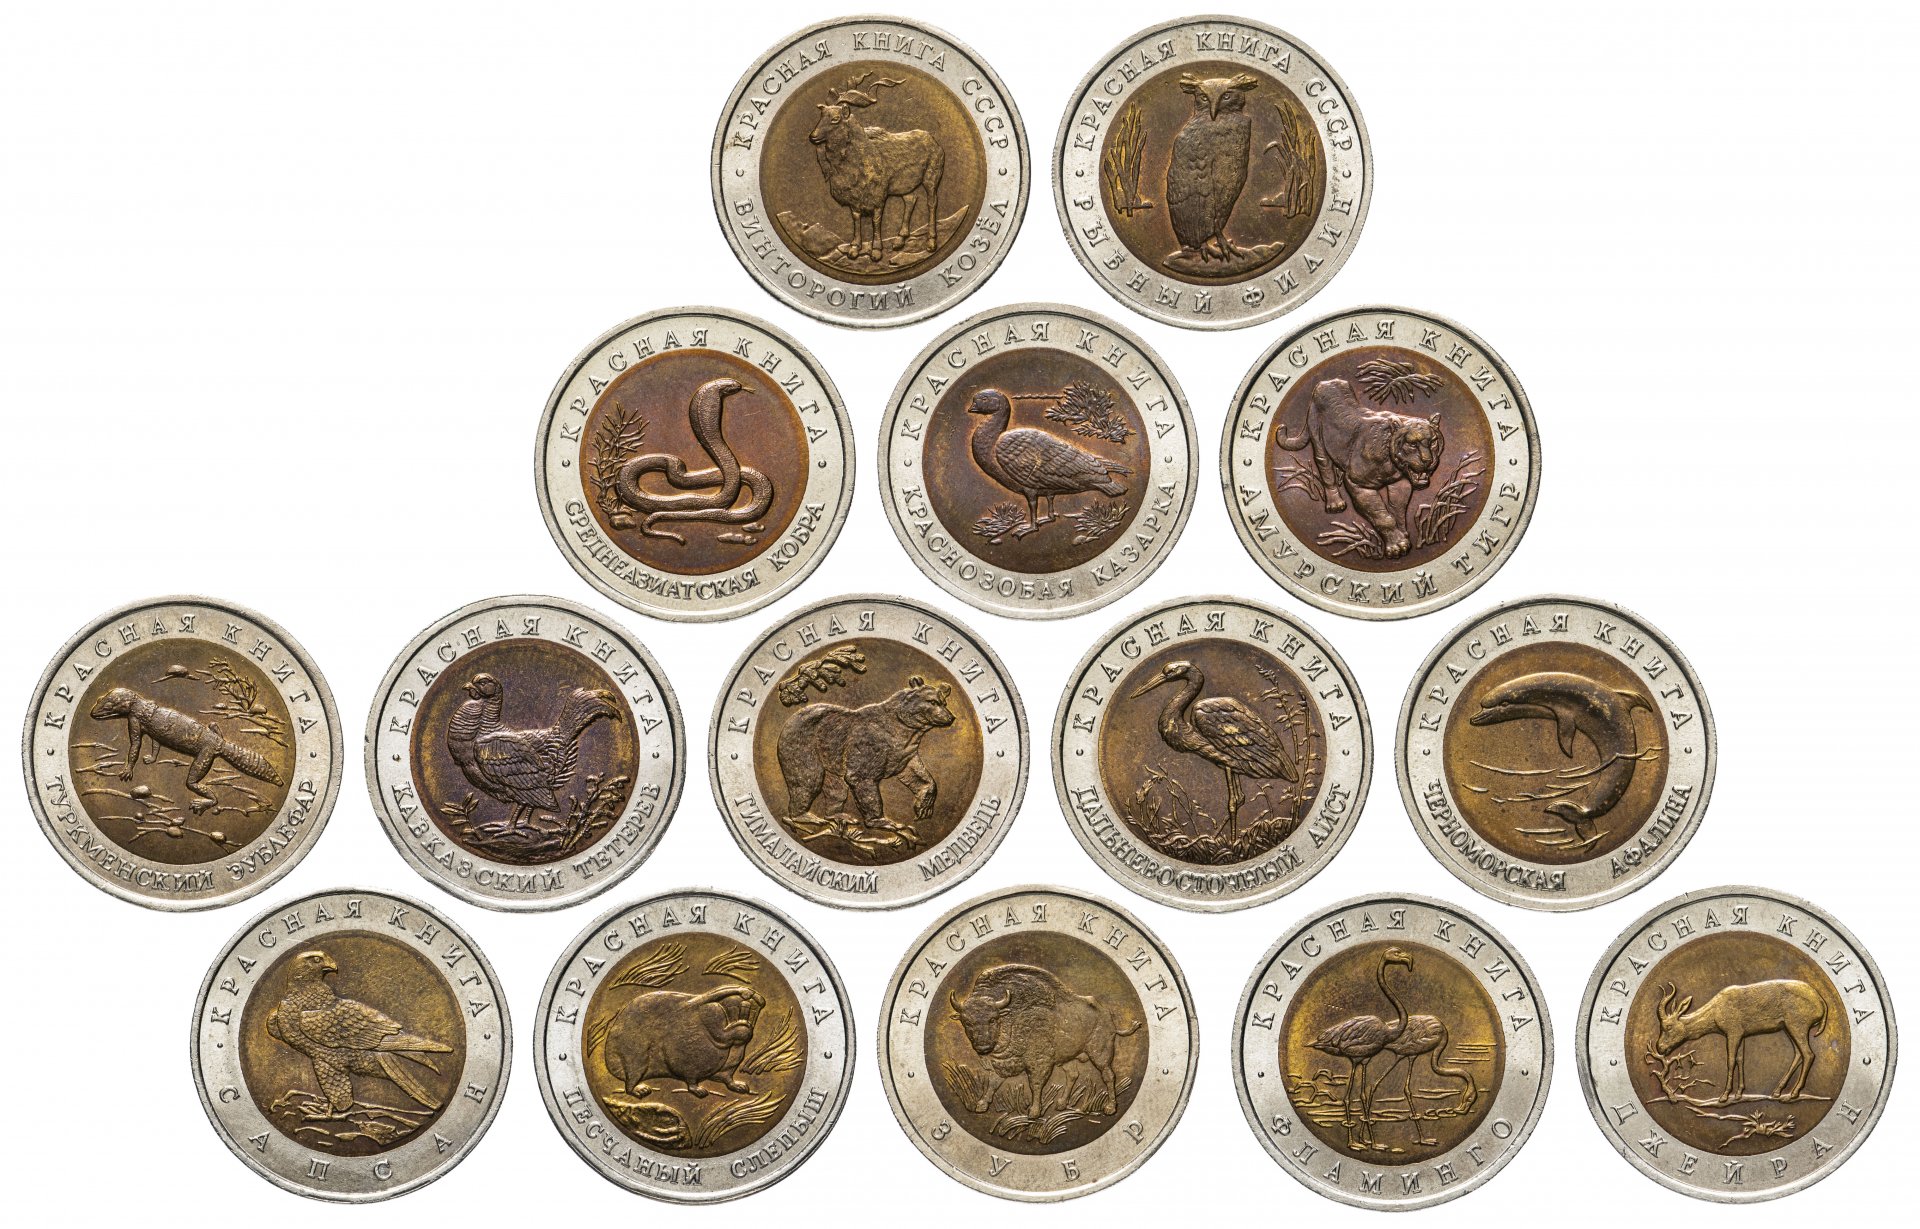 Купить монеты официально. Коллекционные монеты. Наборы монет. Юбилейные монеты. Коллекция монет.